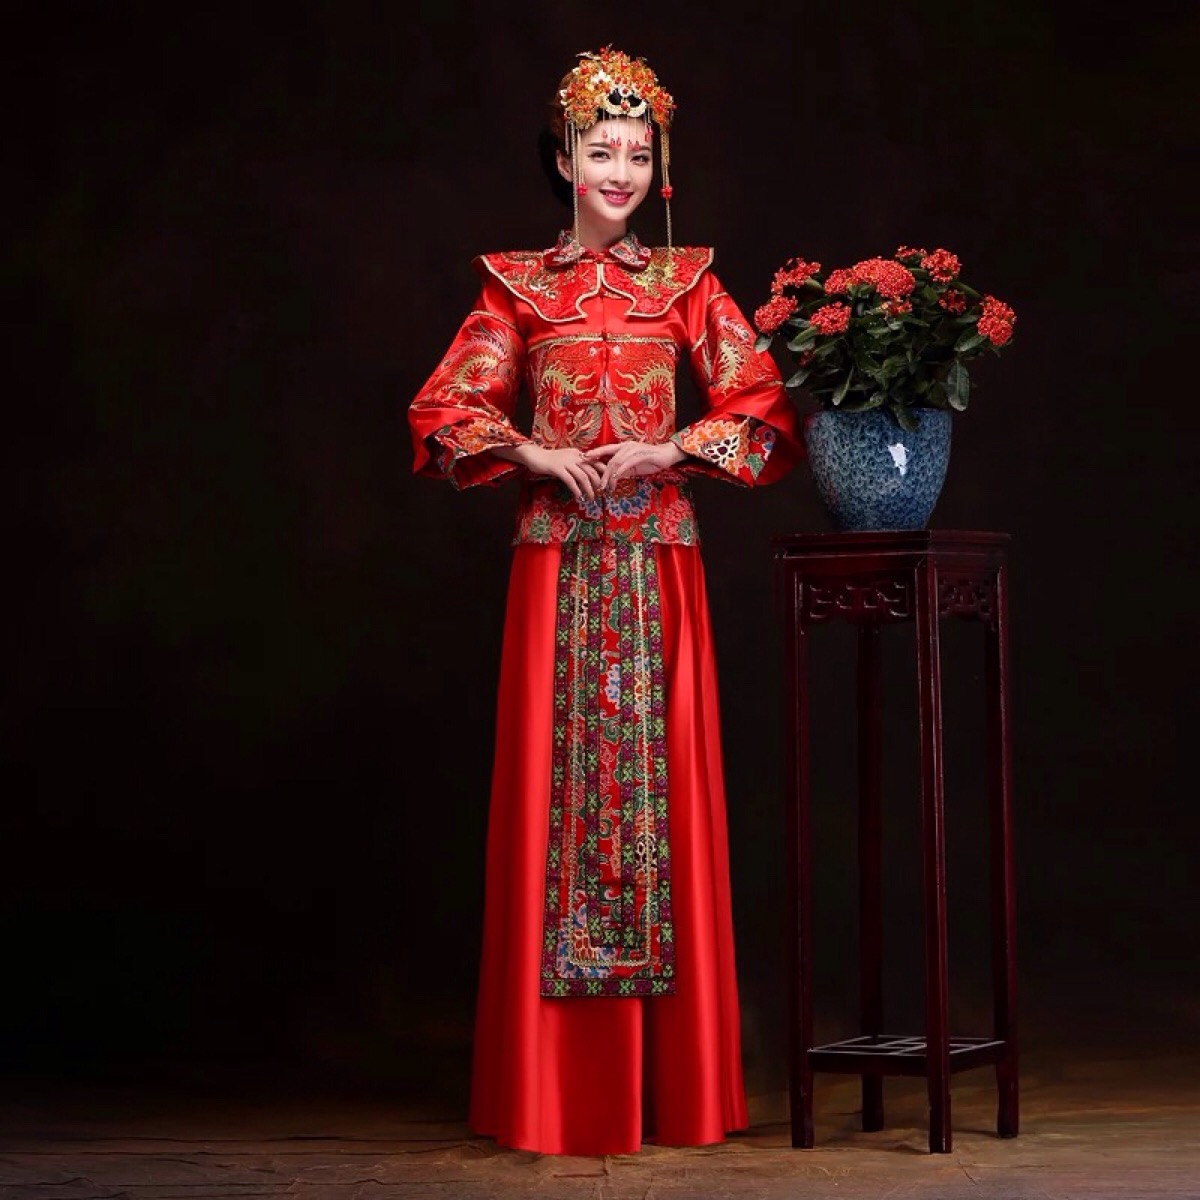 龙凤褂,秀禾服:传统文化精髓之一,女人一生中最美的期待!